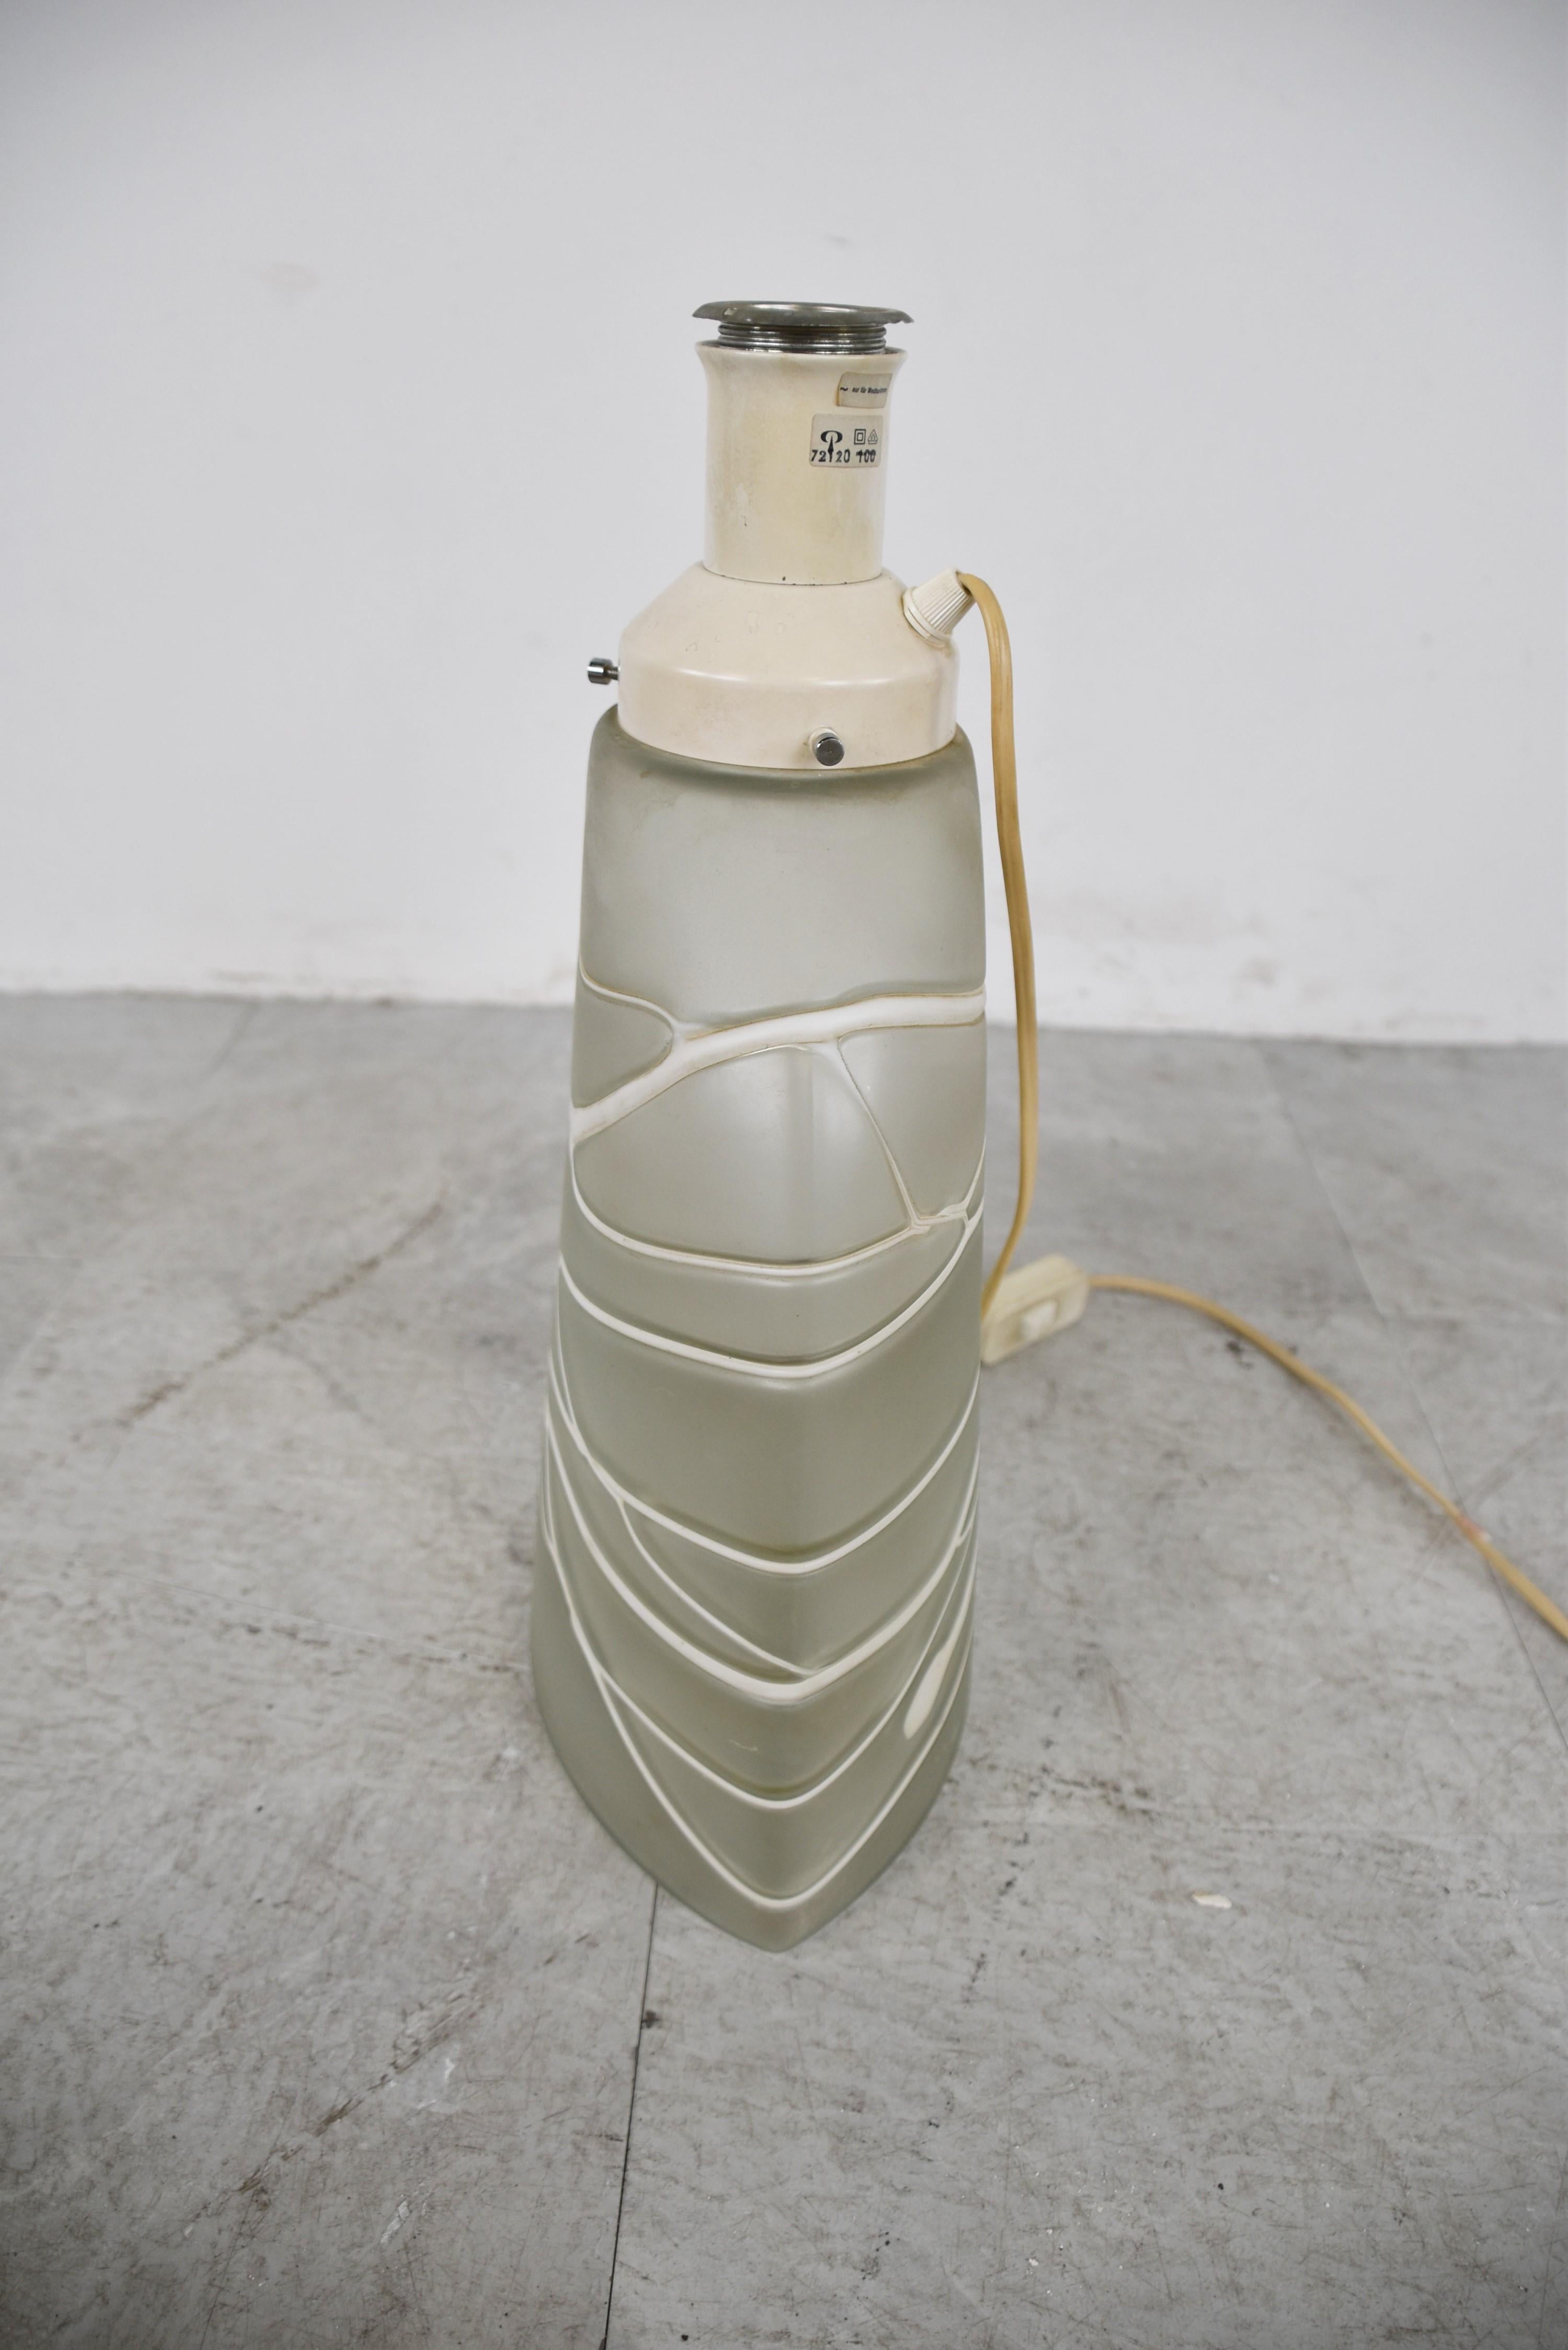 Glas-Tischlampe von Peil und Putzler aus der Mitte des Jahrhunderts. 

Sie hat einen Sockel aus Milchglas mit weißem Futter und den originalen Lampenschirm.

Die Lampe funktioniert mit einer normalen E27-Schraubglühbirne und gibt ein weiches,